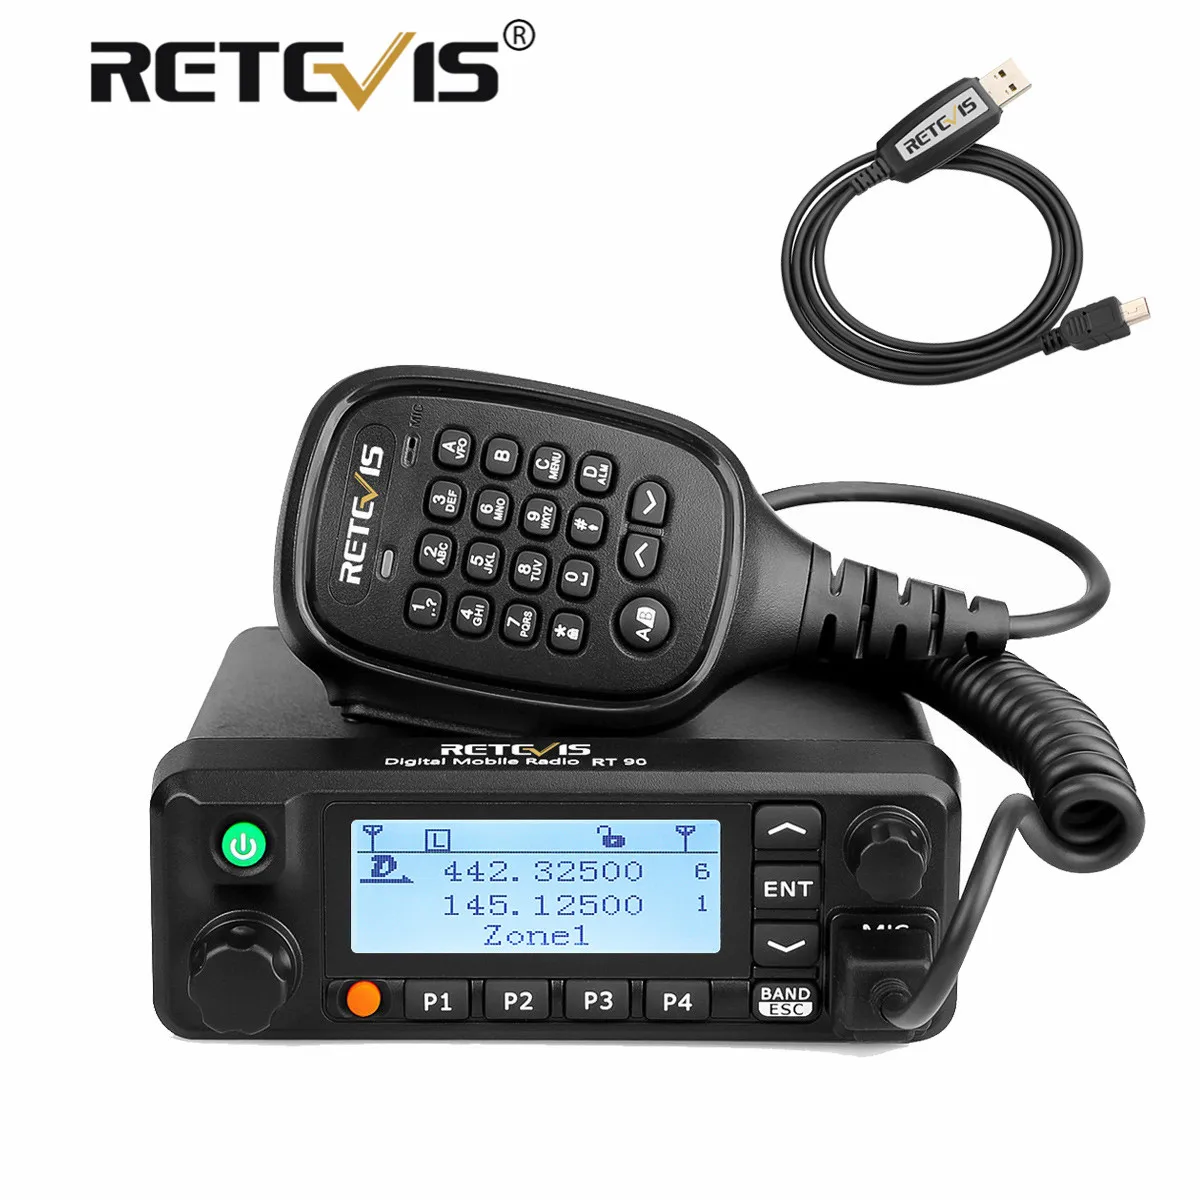 Цифровой радиоприемник Retevis RT90 DMR макс. диапазон 10 км - купить по выгодной цене |